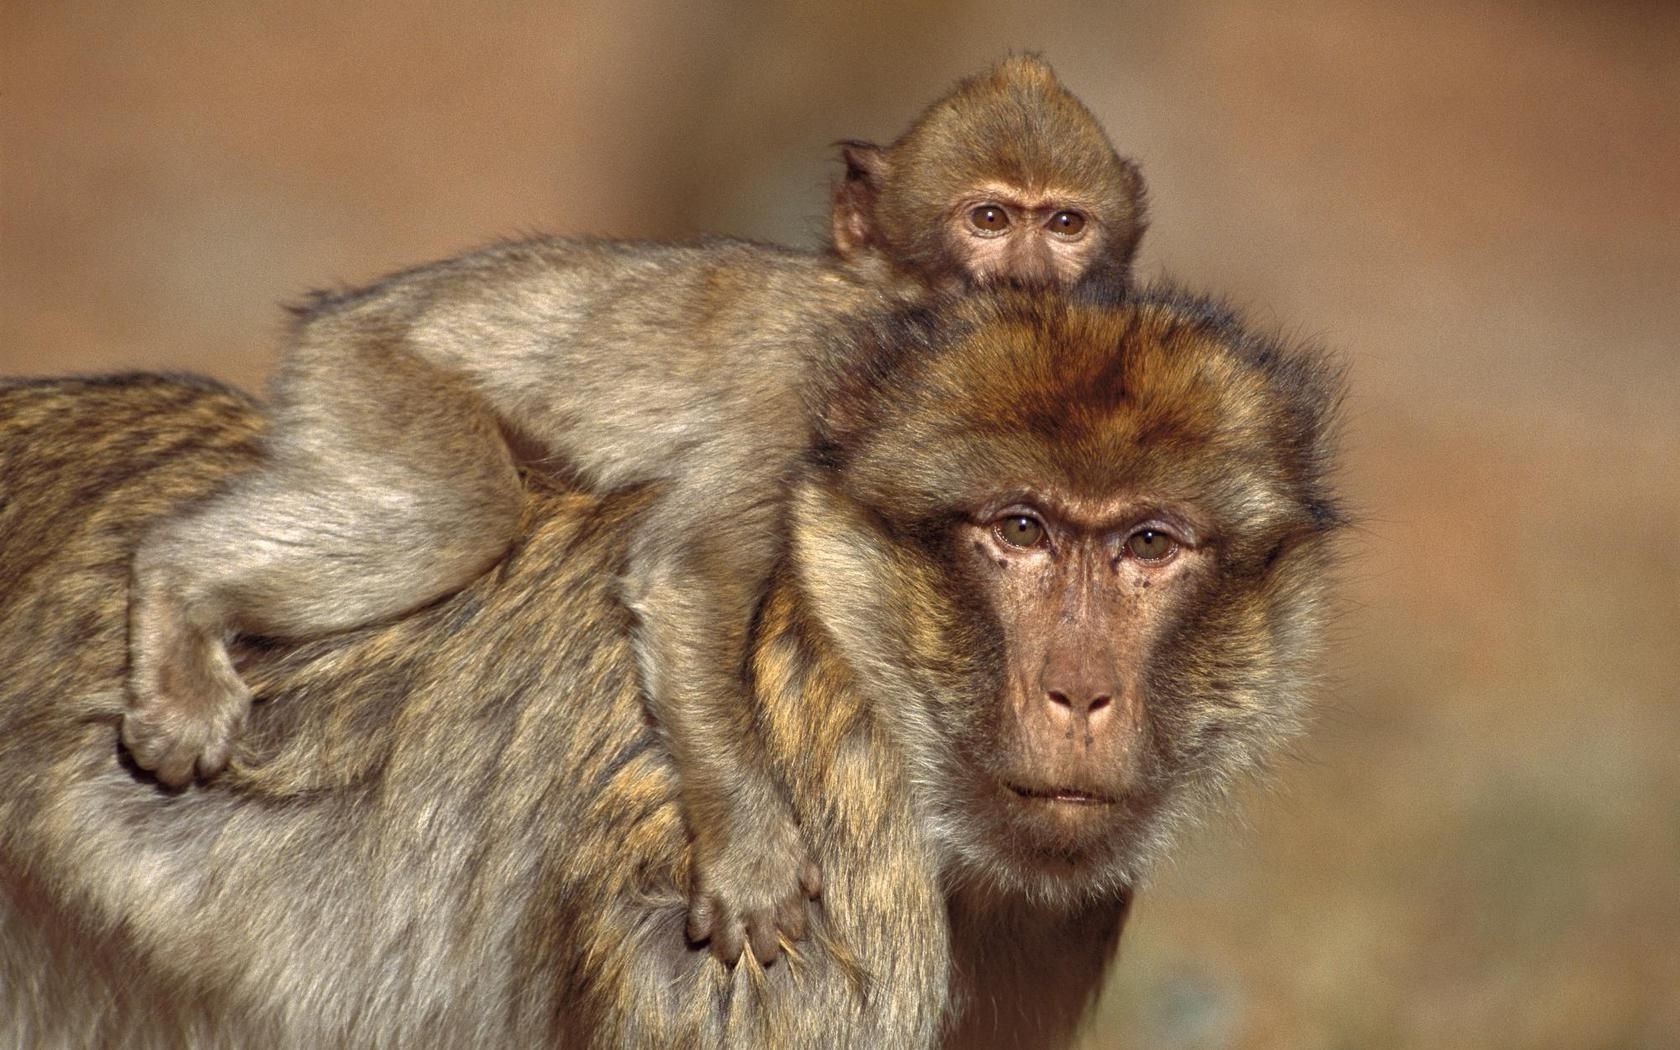 приматы млекопитающее дикой природы обезьяна предстоятель животное милые дикий природа портрет мех зоопарк ребенок кривляться